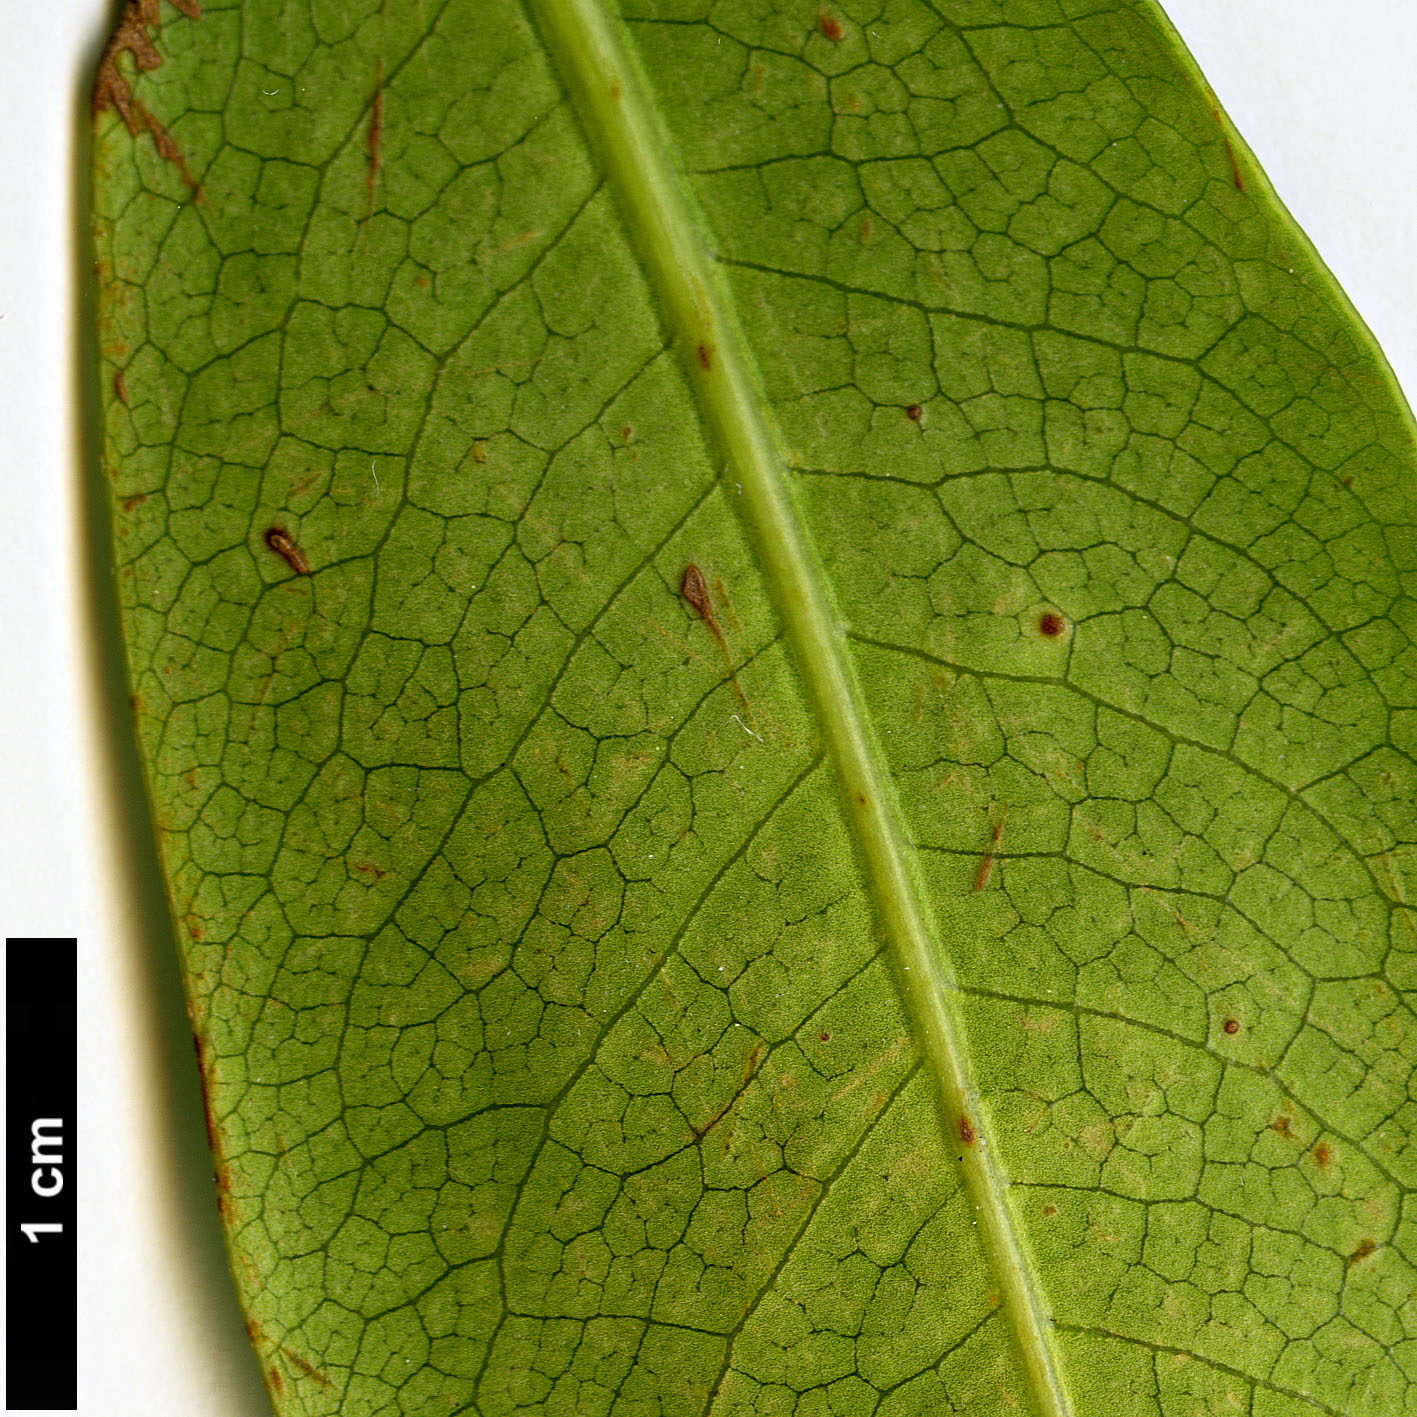 High resolution image: Family: Pittosporaceae - Genus: Pittosporum - Taxon: coriaceum